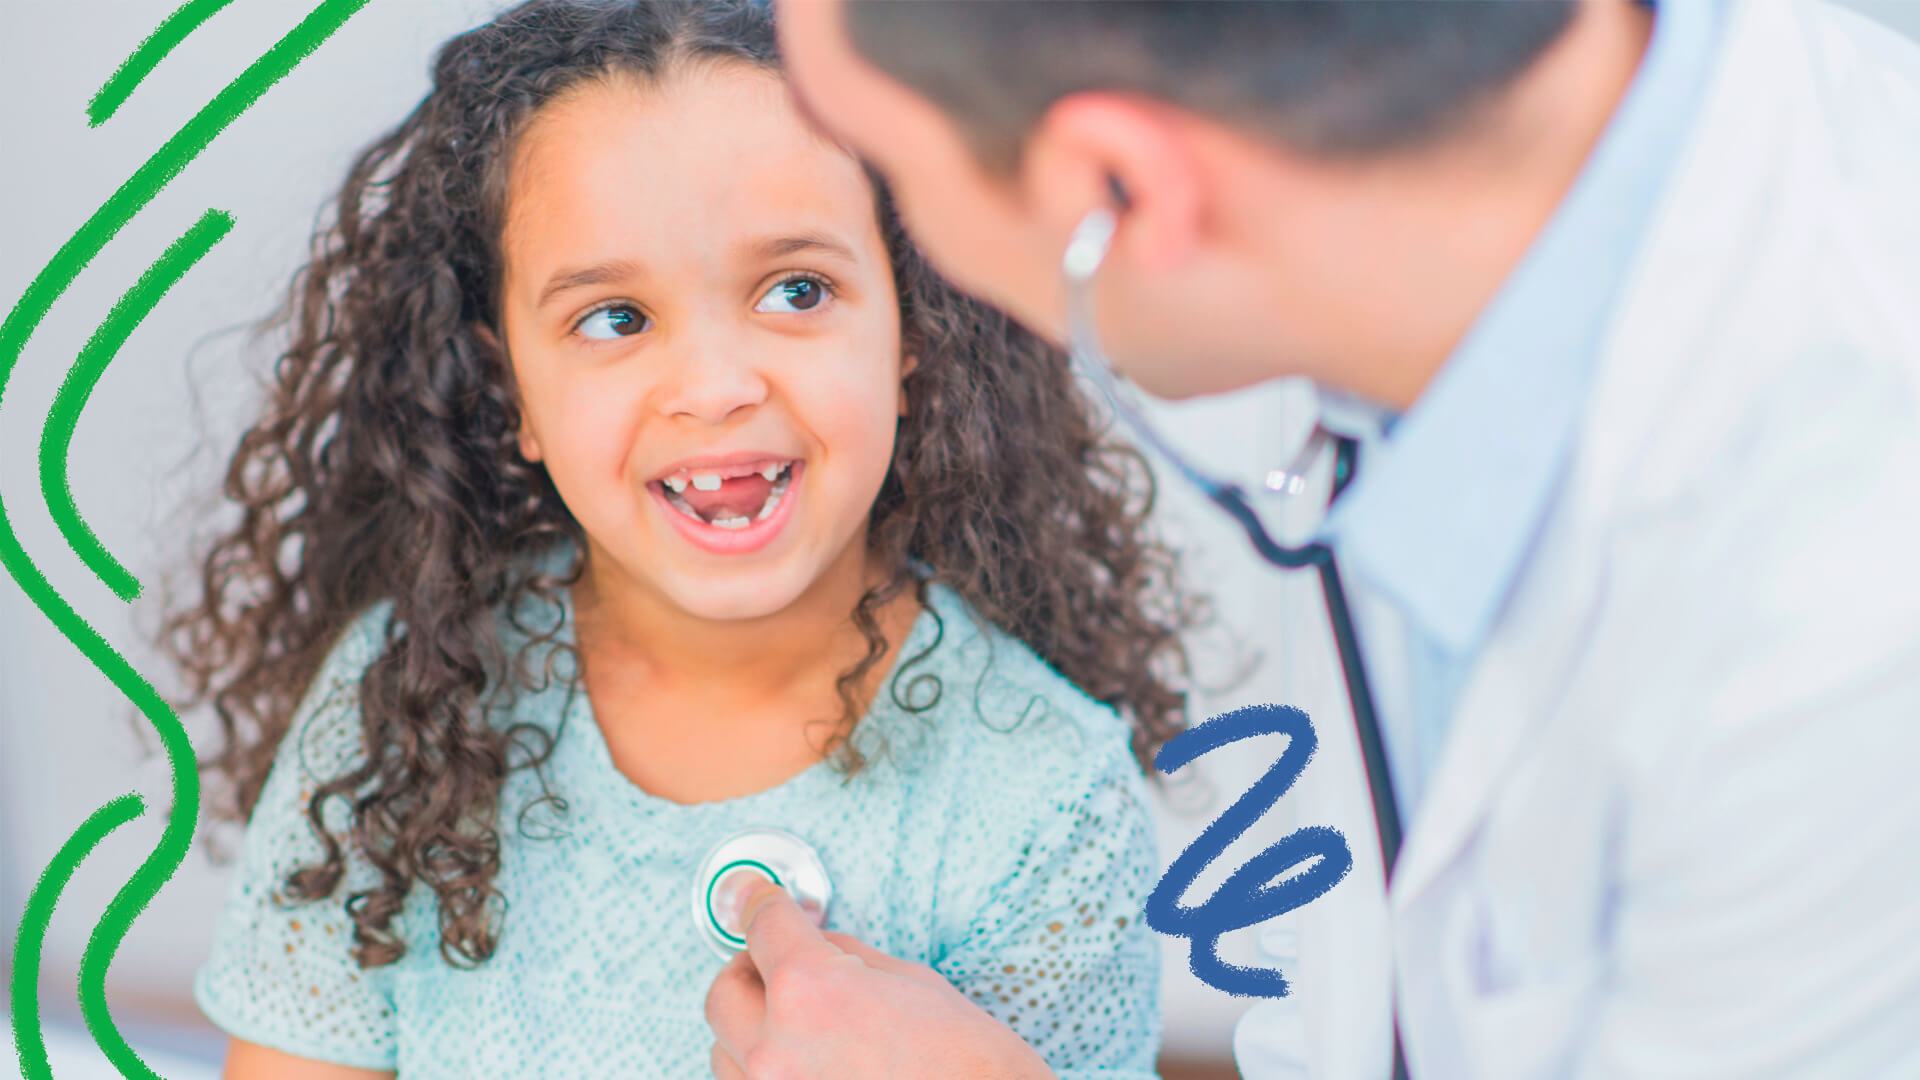 Na imagem, uma menina conversa com um médico, que utiliza um estetoscópio. Imagem ilustra matéria sobre práticas na pediatria que priorizam o melhor interesse da criança.